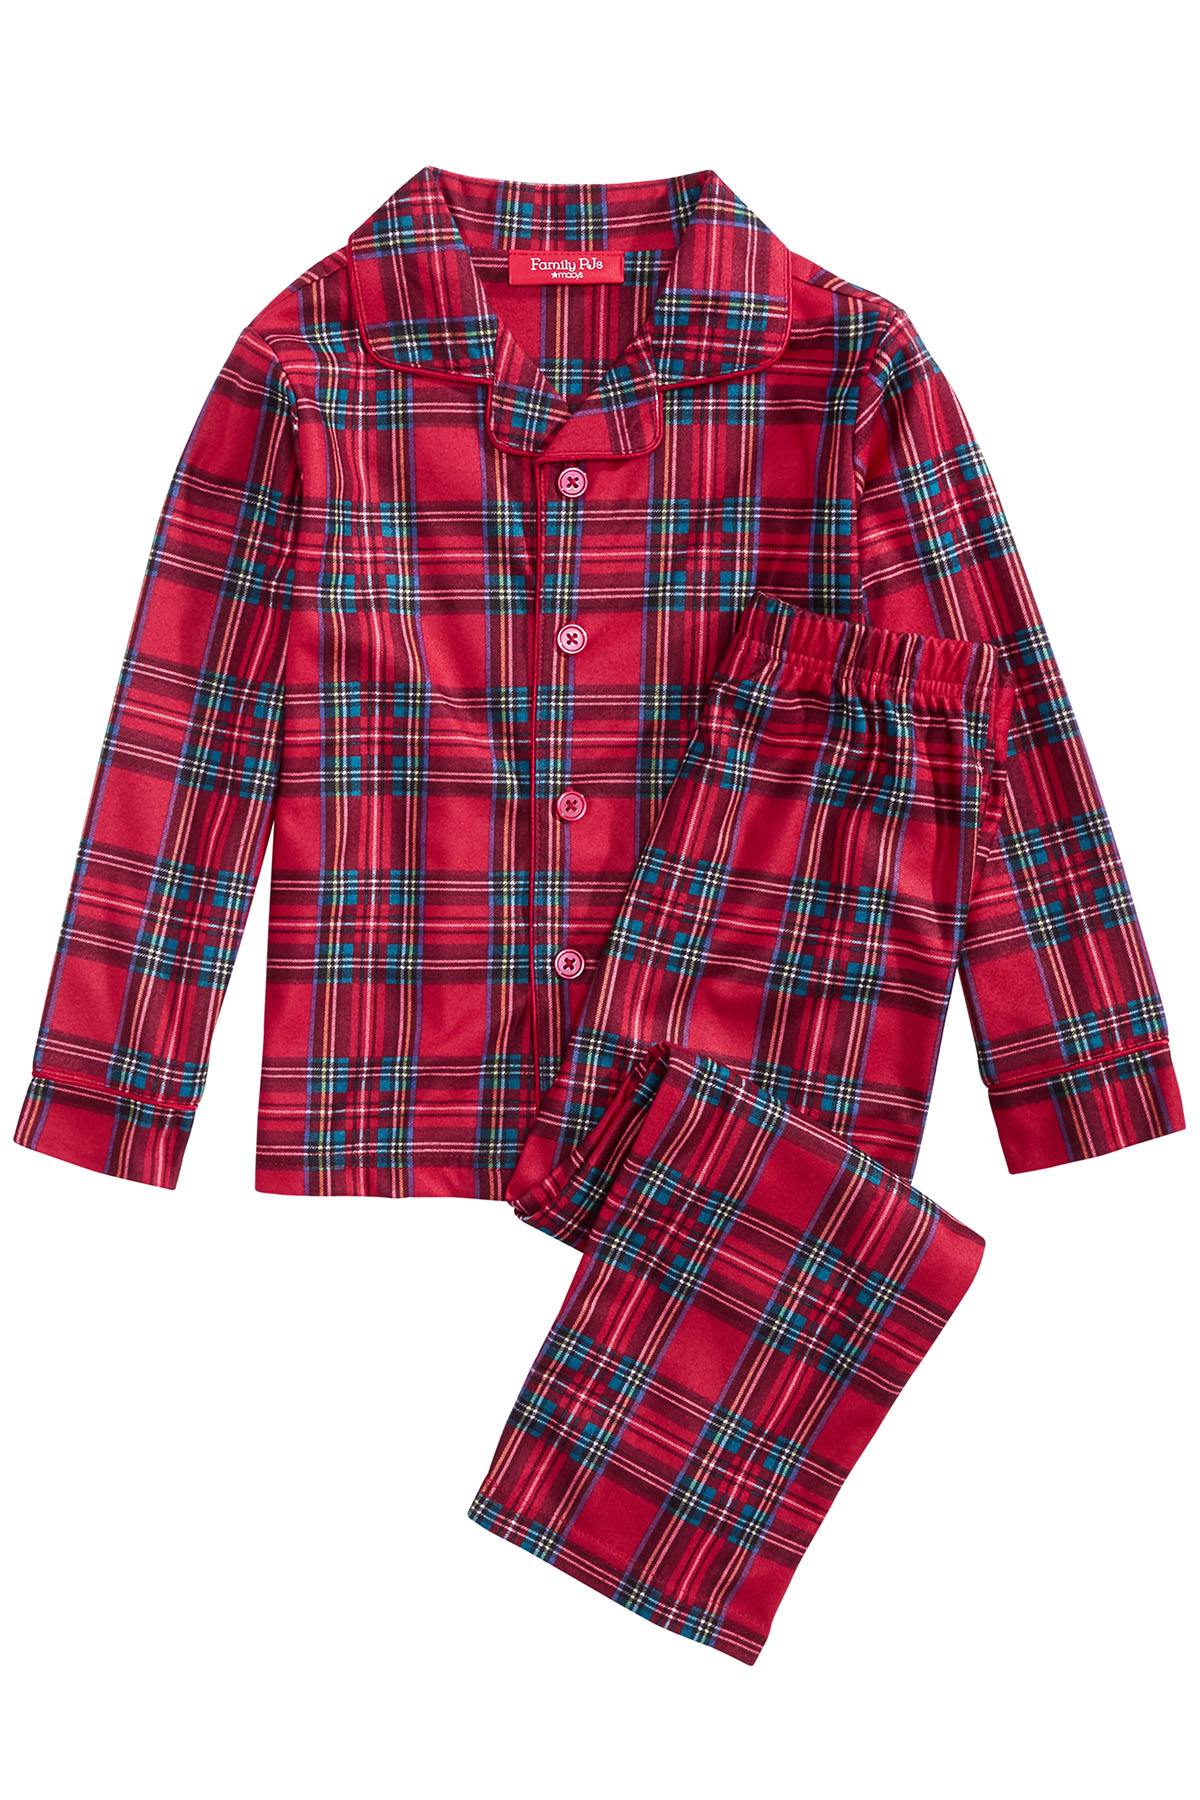 Family Pajamas Matching Women's Brinkley Plaid Family Pajama Set